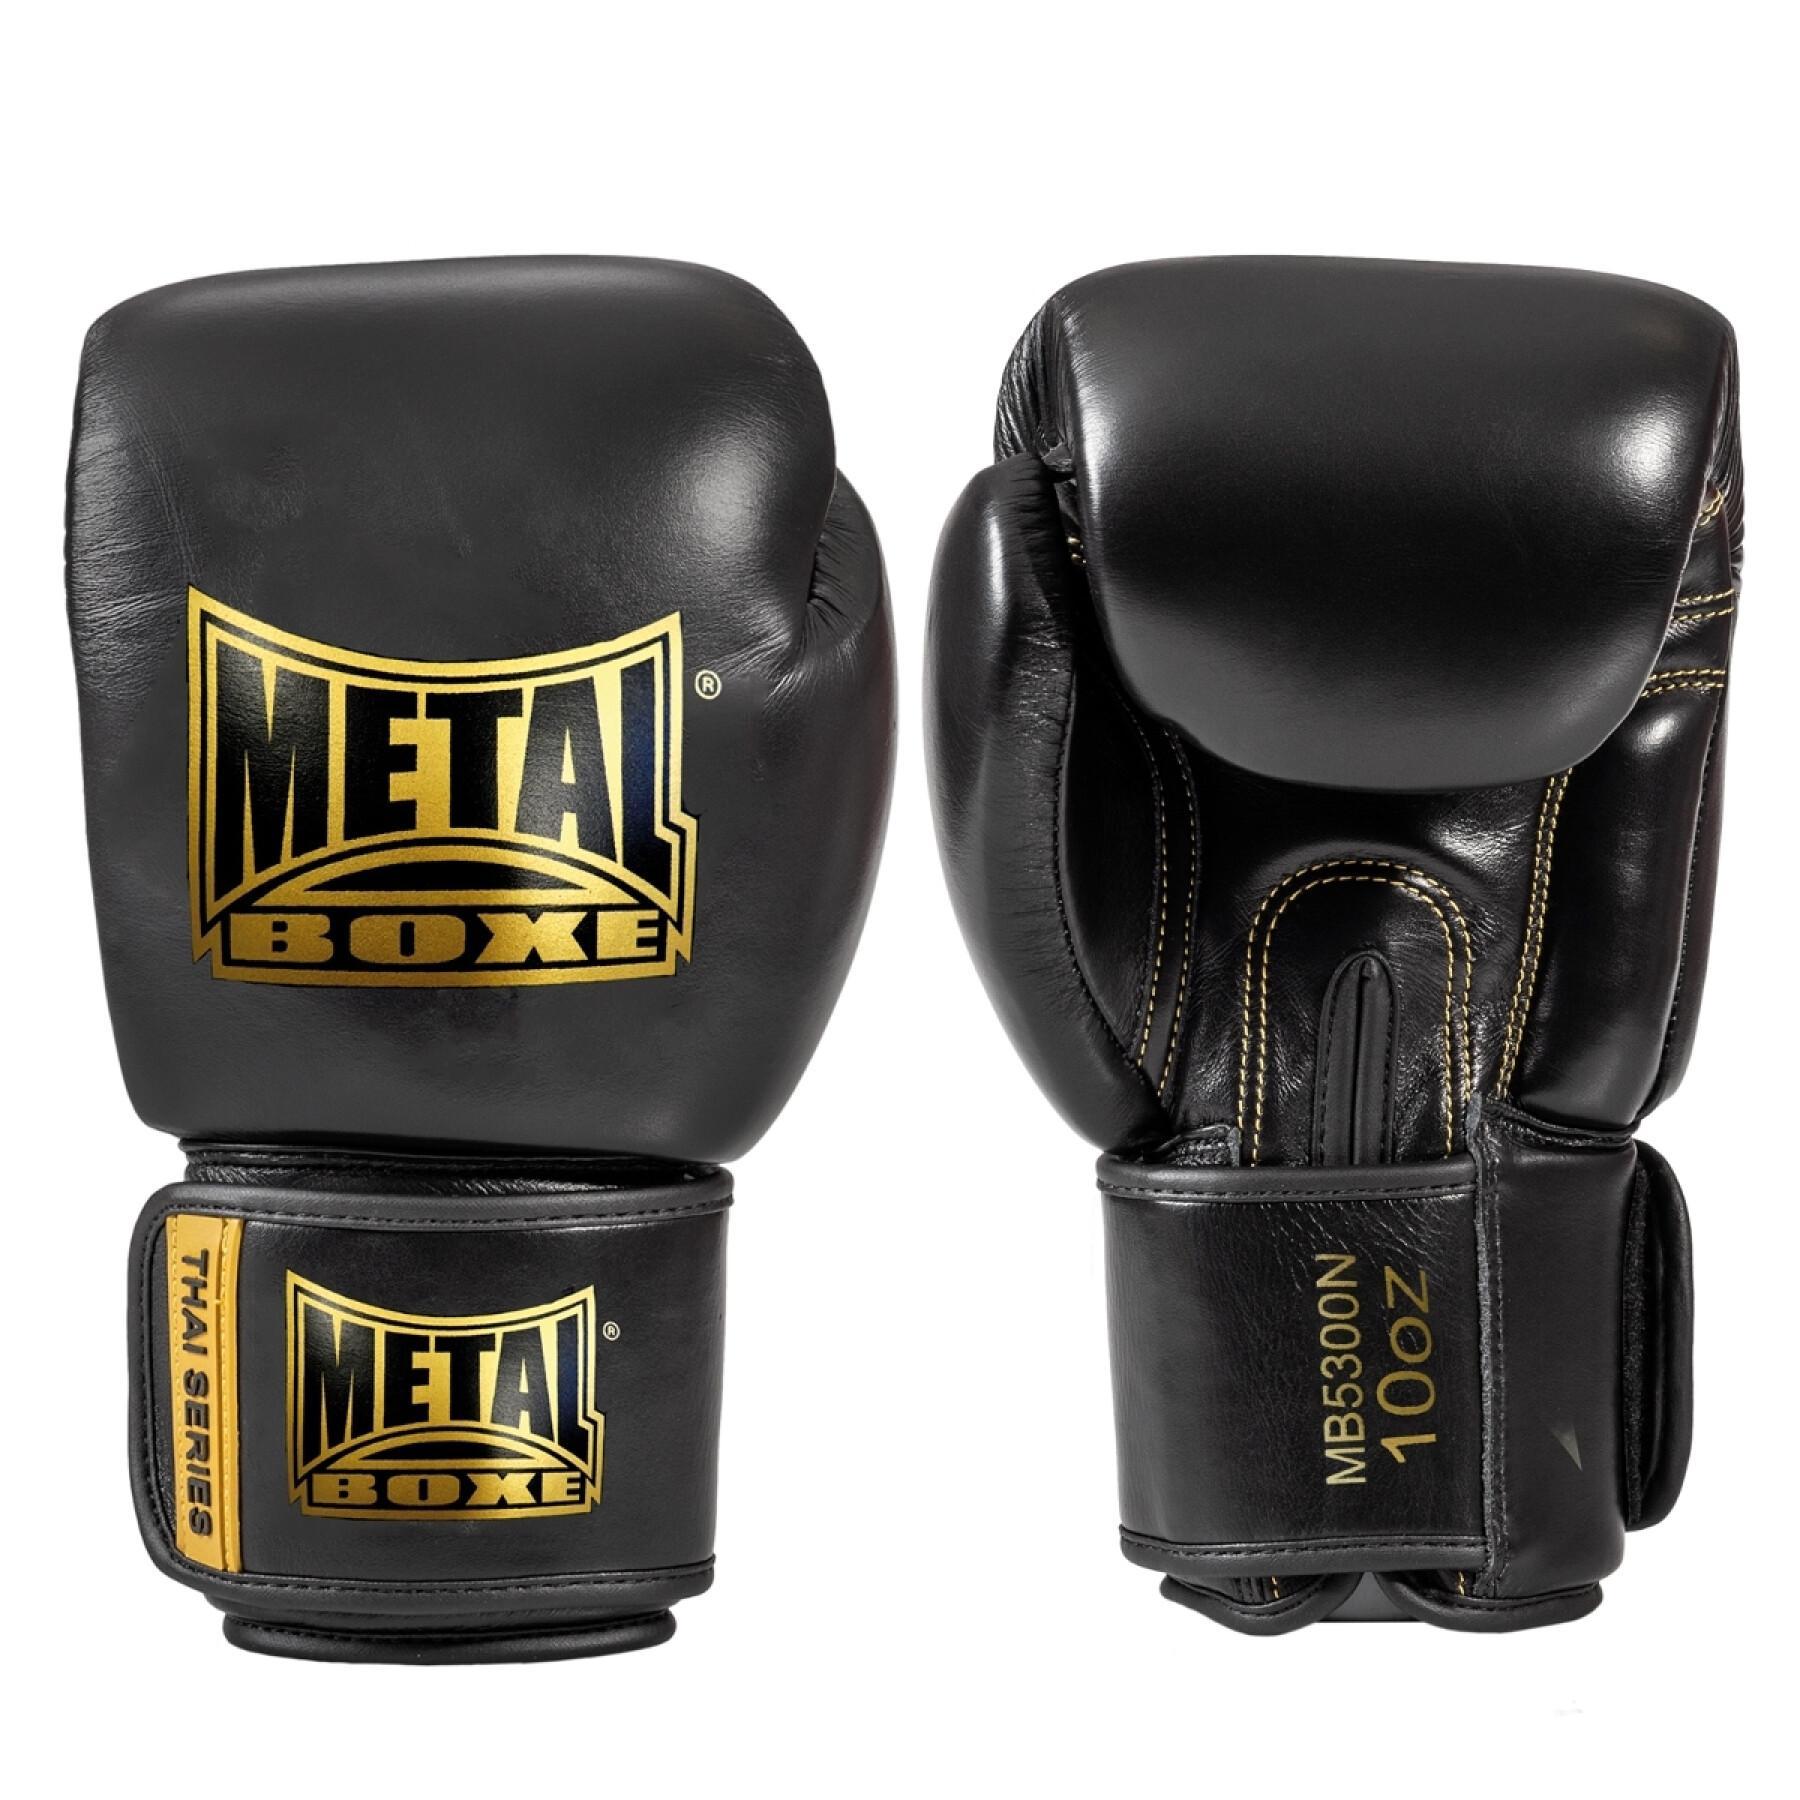 Skórzane rękawice bokserskie Metal Boxe thai series